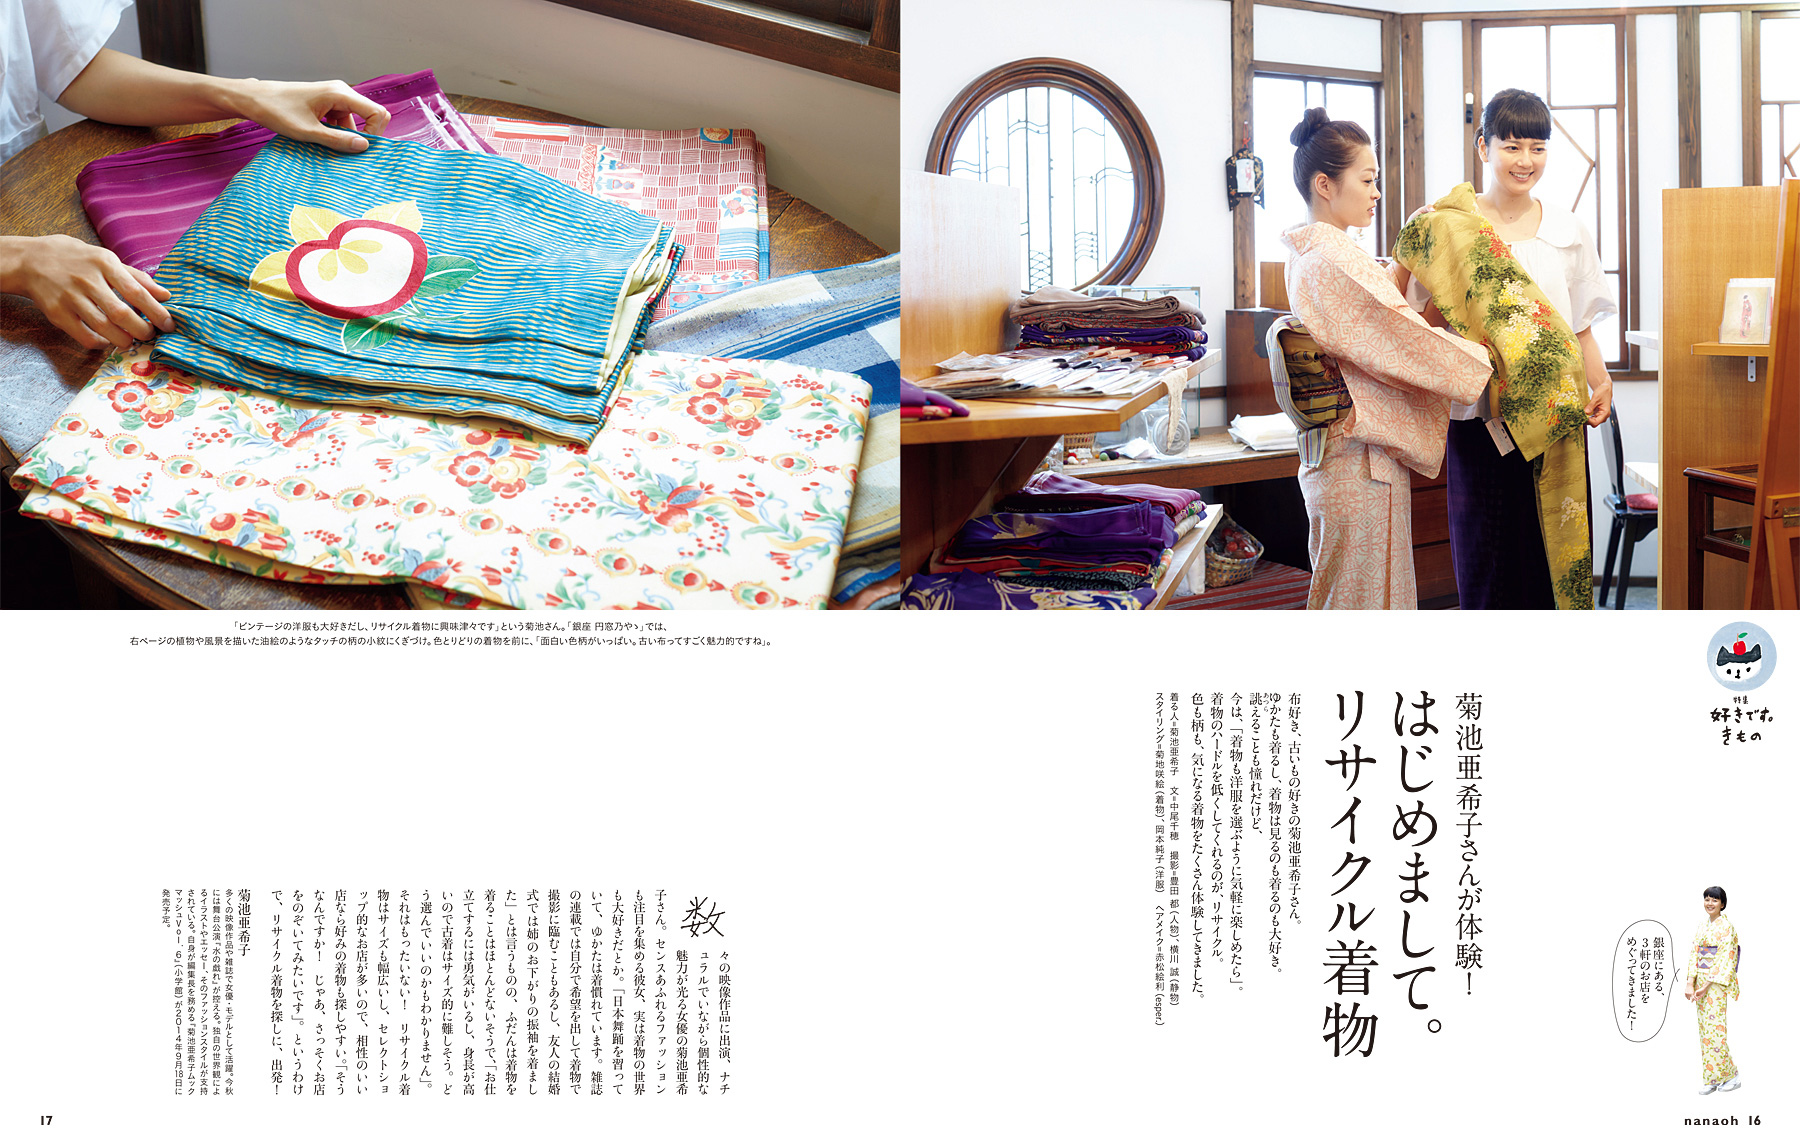 Vol 39 菊地亜希子さんが体験 はじめまして リサイクル着物 雑誌 七緒 Nanaoh 着物からはじまる暮らし の公式サイト プレジデント社